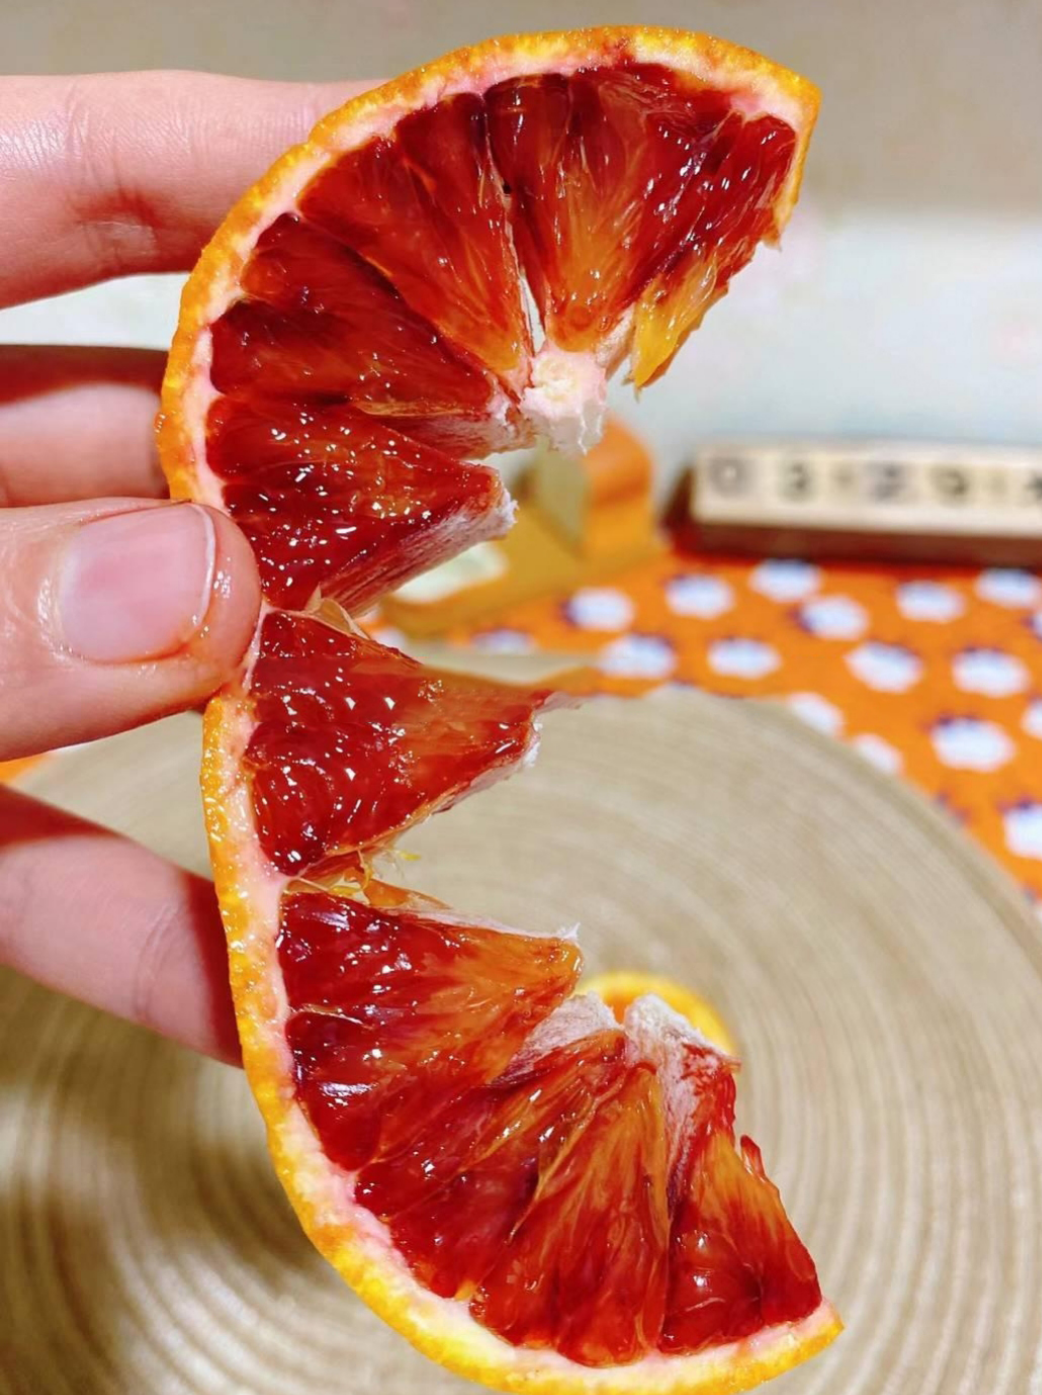 中华红（血橙） - 四季鲜橙 - 中国脐橙之乡,秭归脐橙之乡,秭归脐橙,脐橙,橙子 - 脐橙